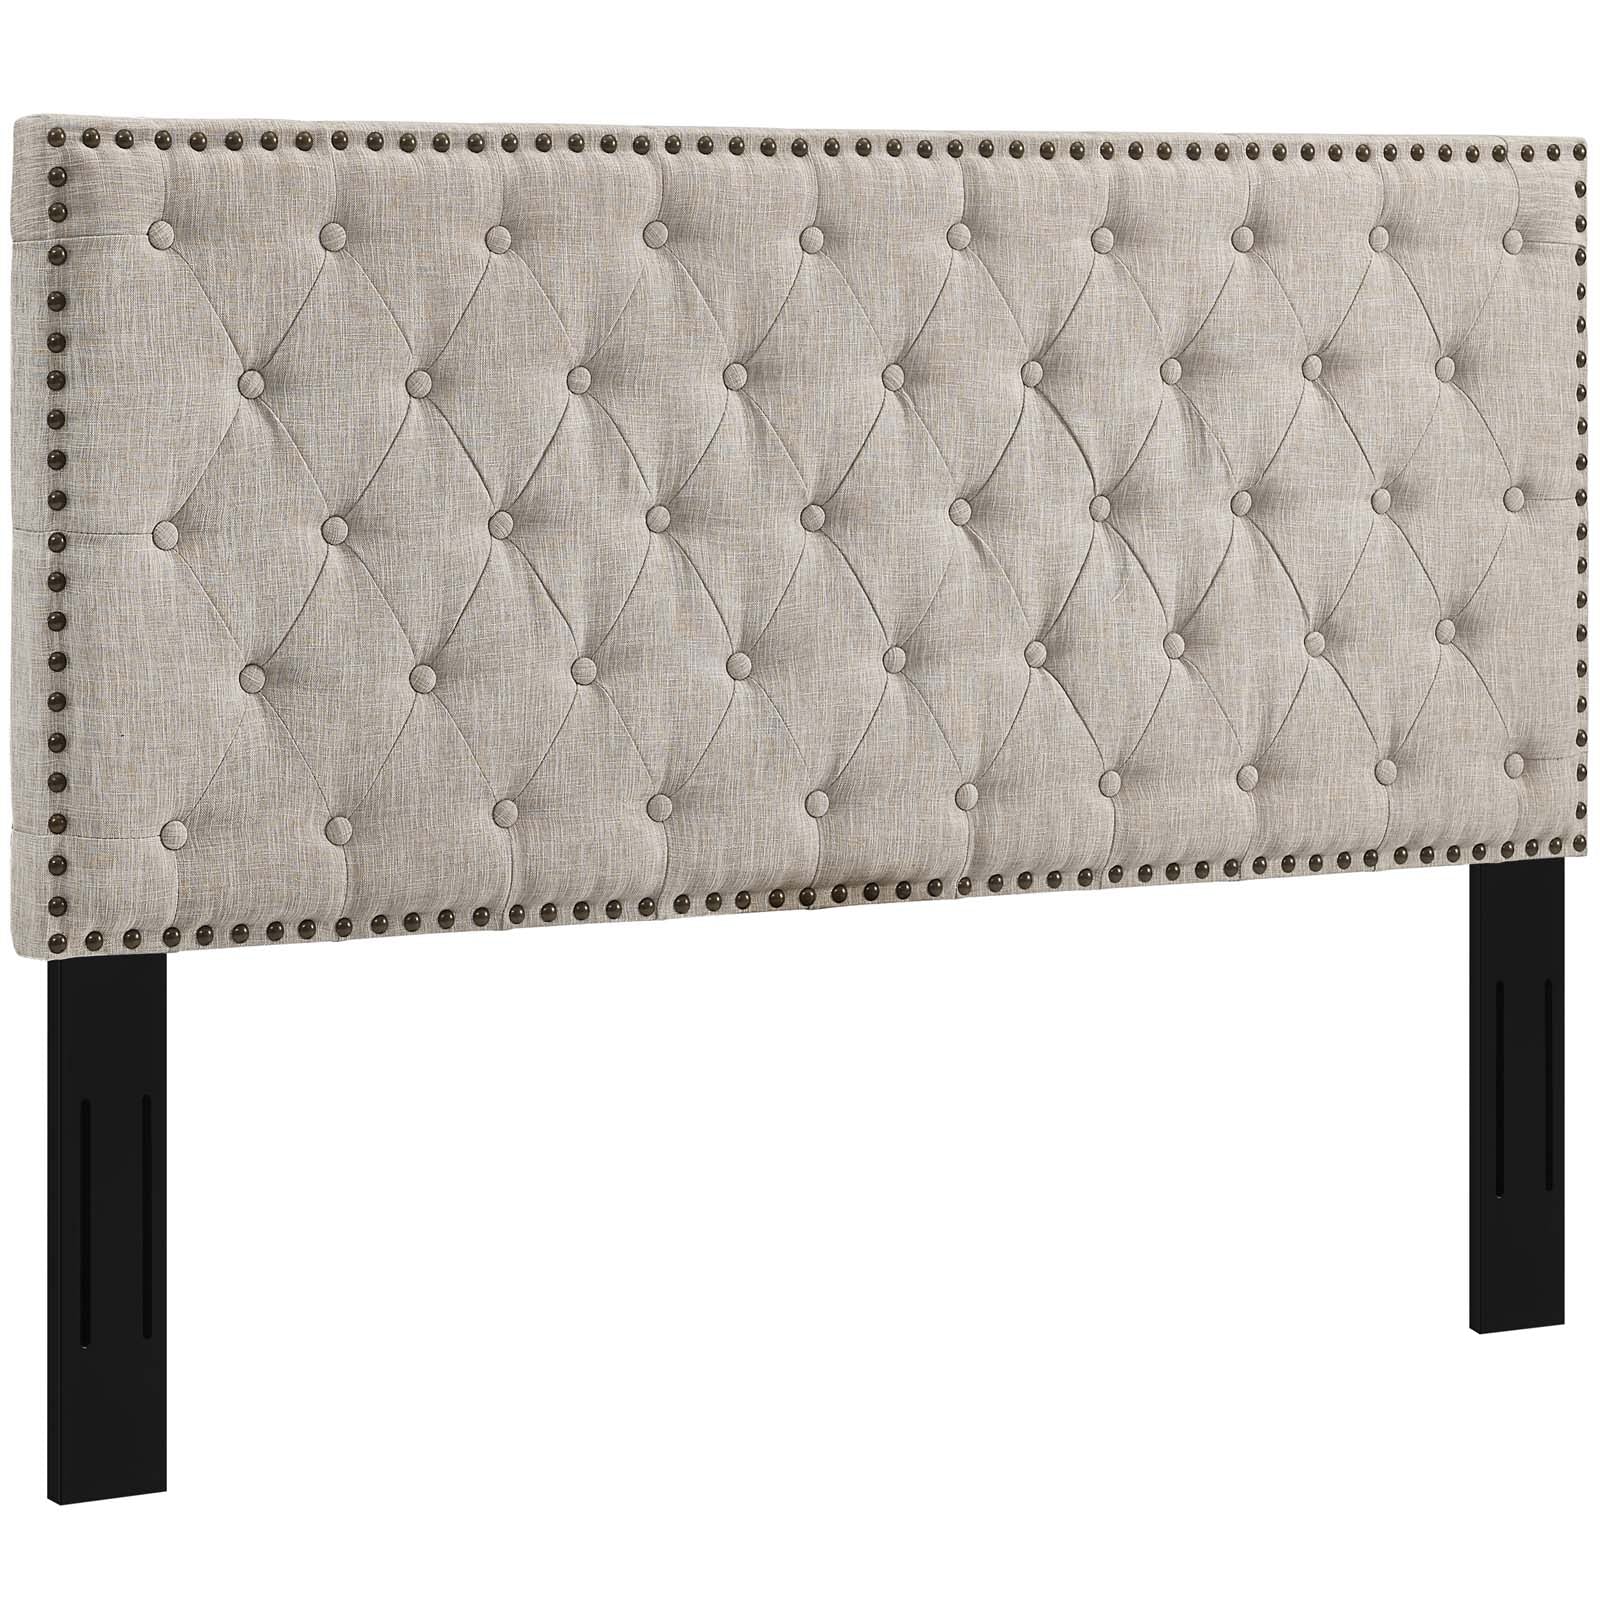 Helena Tufted Upholstered Linen Fabric Headboard-Headboard-Modway-Wall2Wall Furnishings